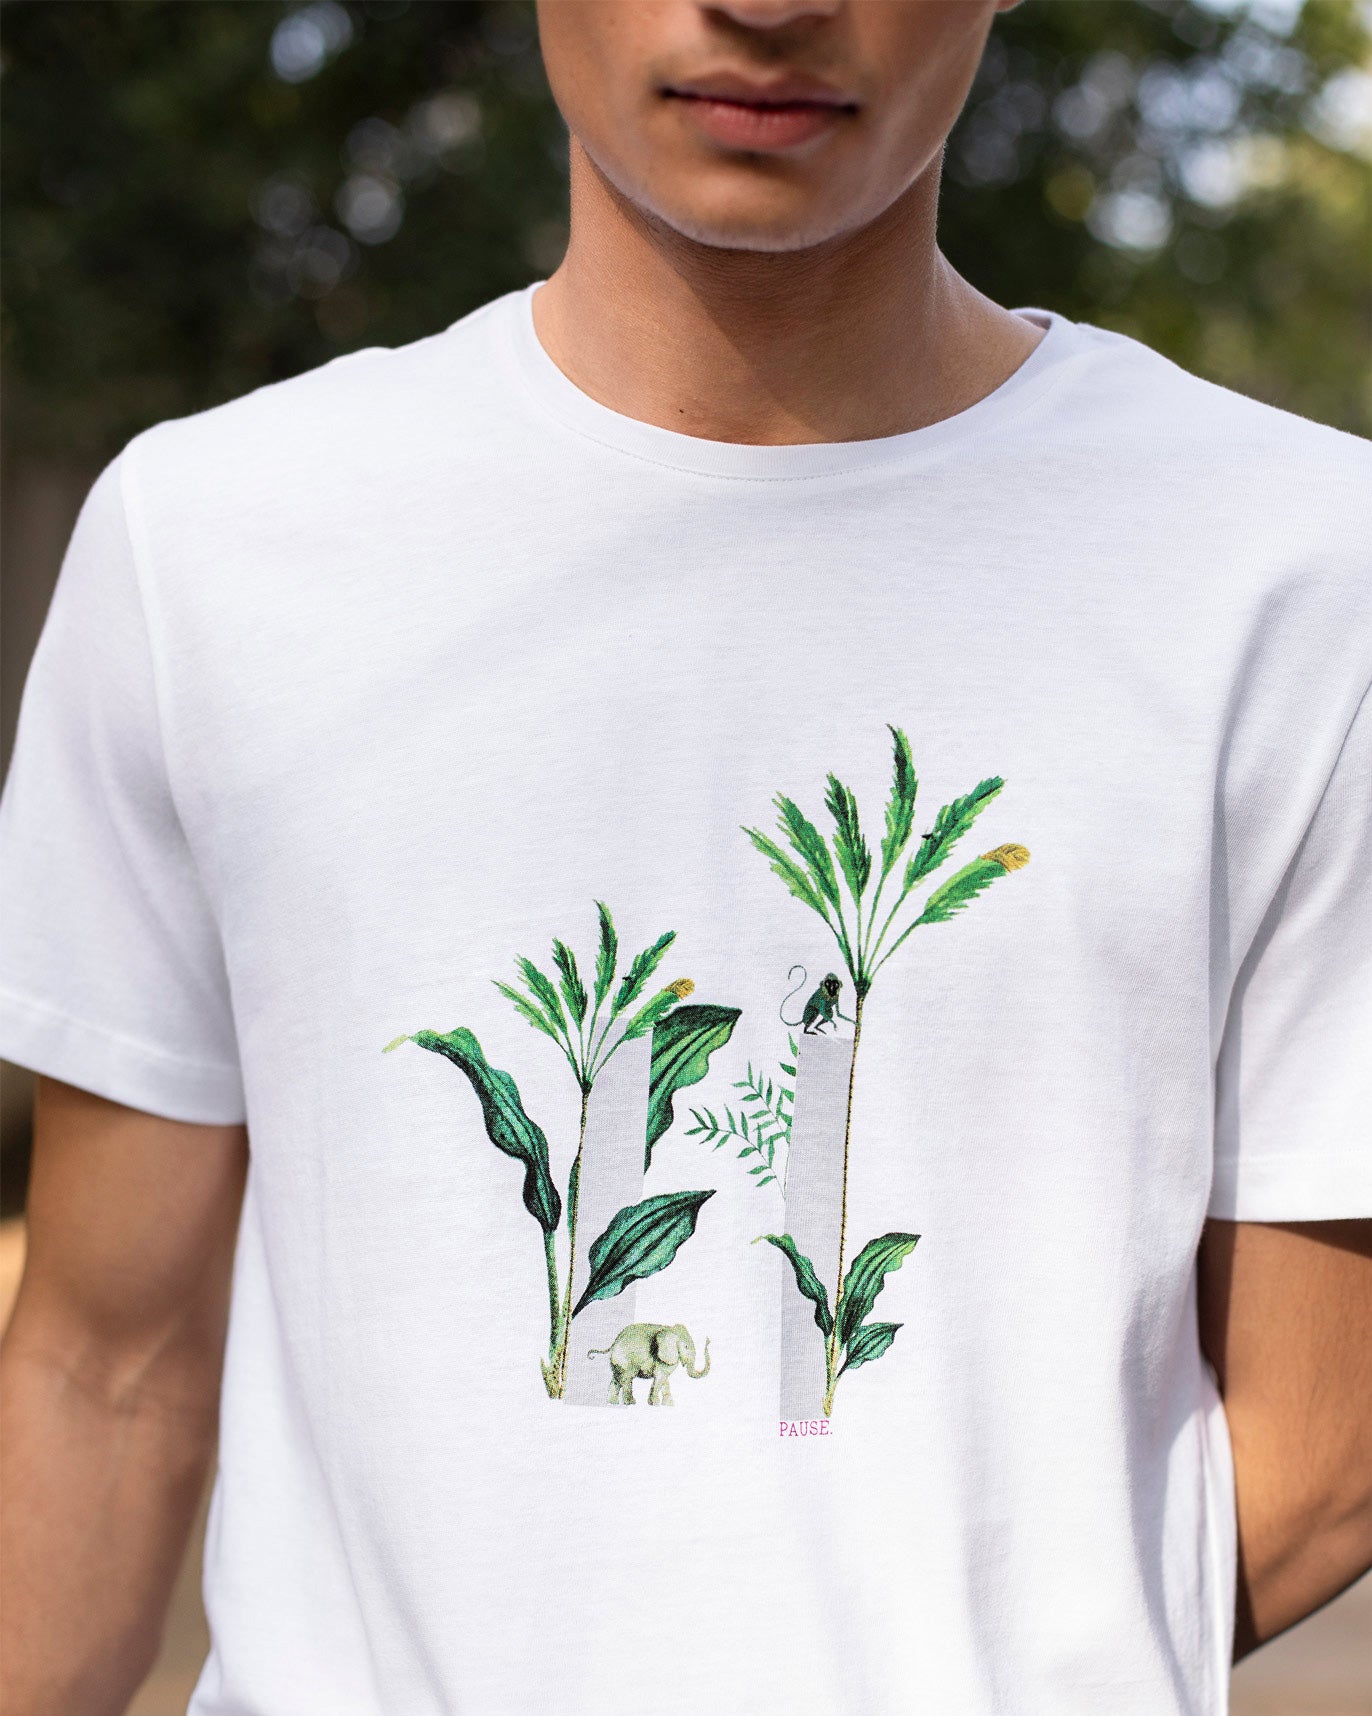 Wildlife Corridor T-Shirt - White